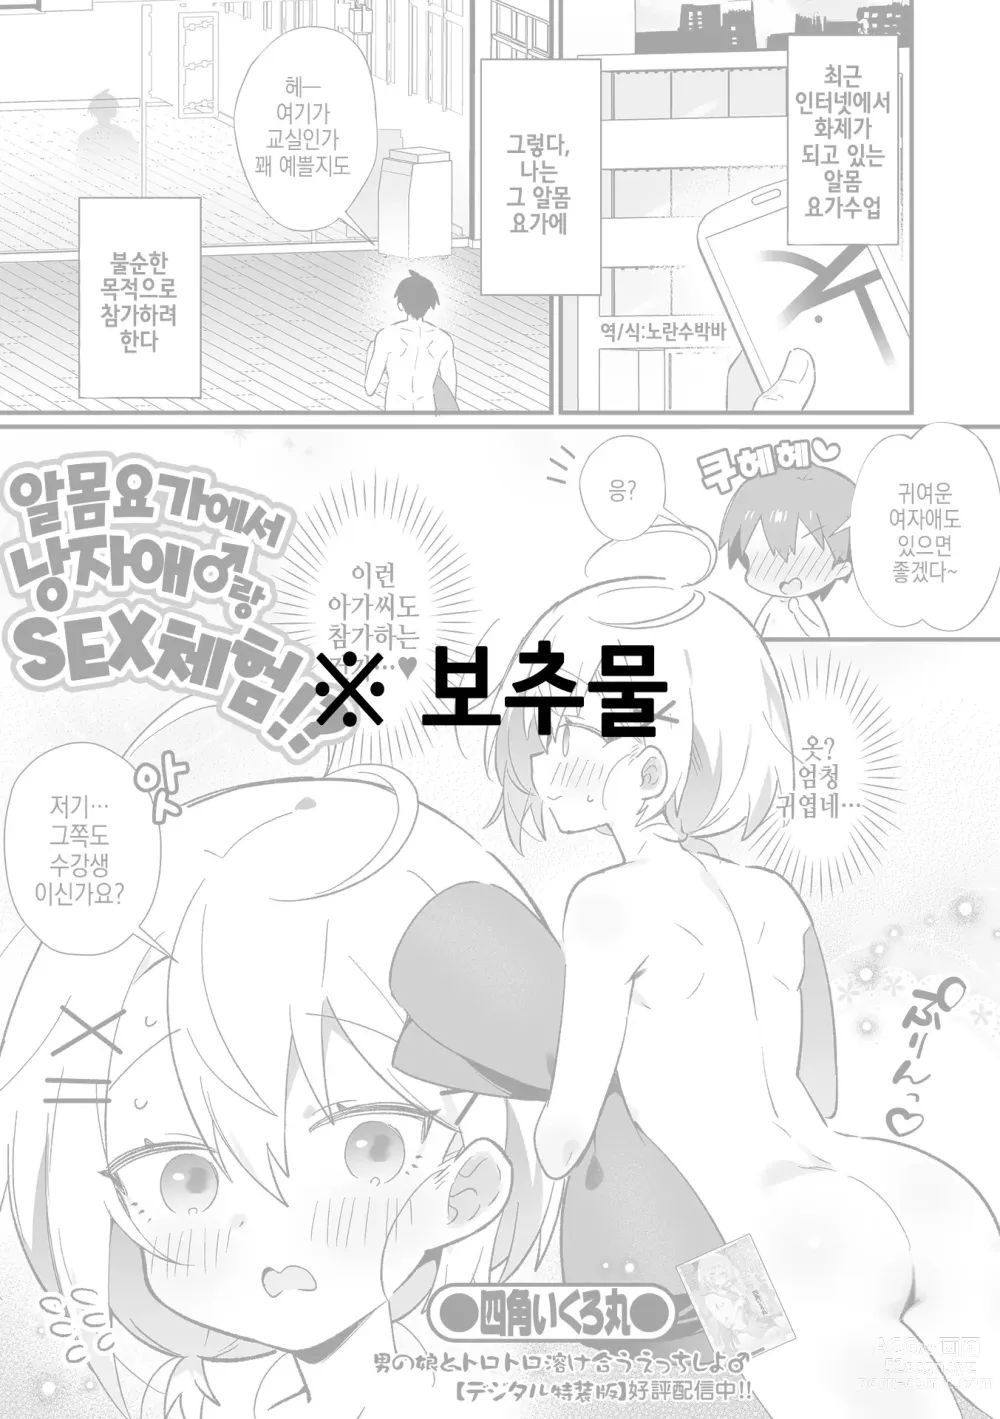 Page 1 of manga 알몸요가에서 낭자애♂랑 SEX 체험！？